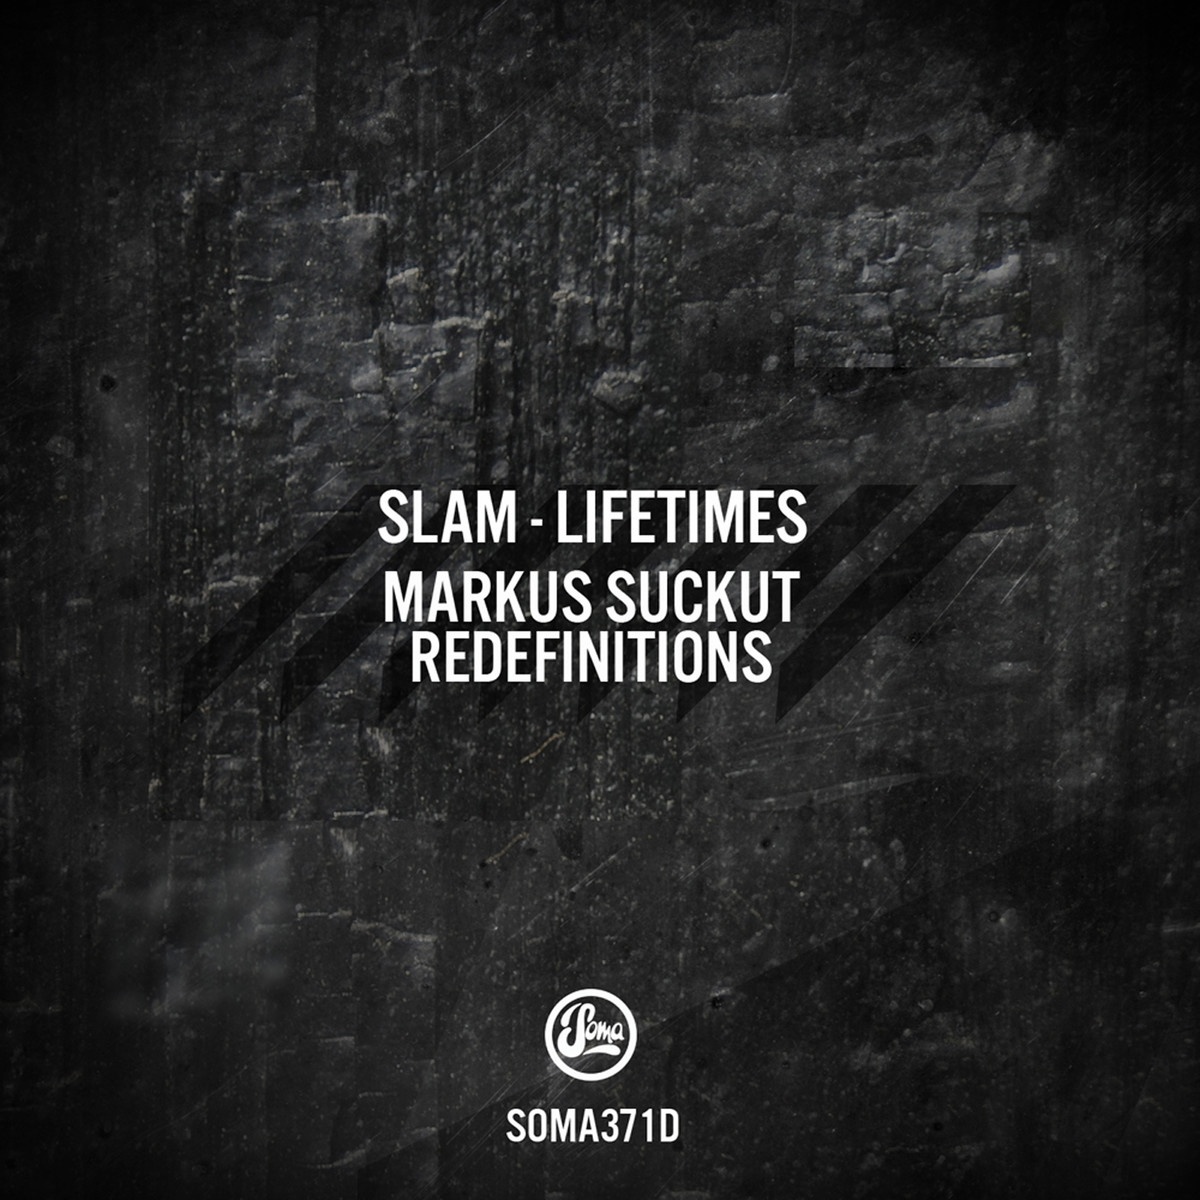 Lifetimes (Markus Suckut Redefinition 2)